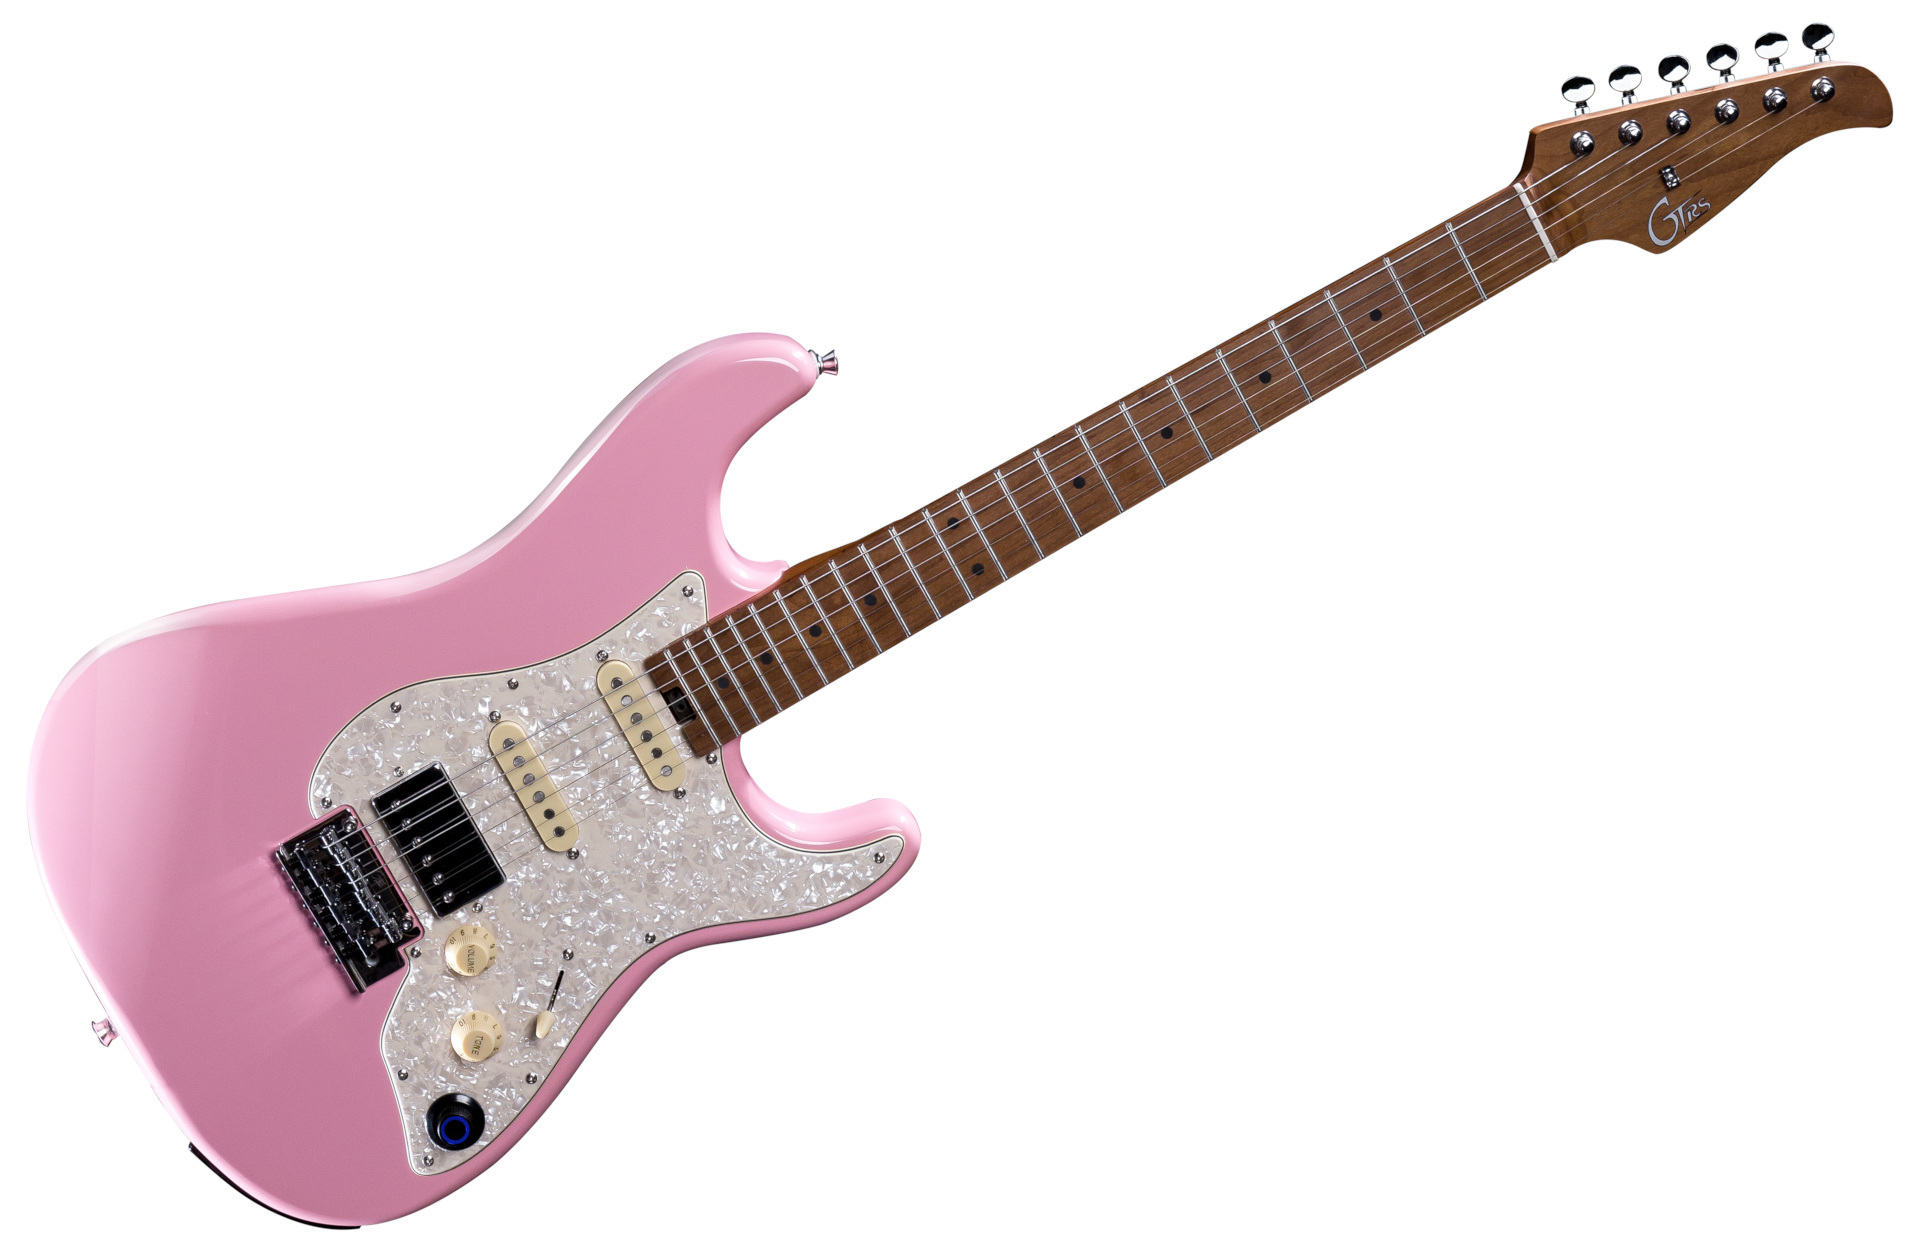 Mooer GTRS Guitars Standard 801 Intelligent Guitar (S801) - Shell Pink